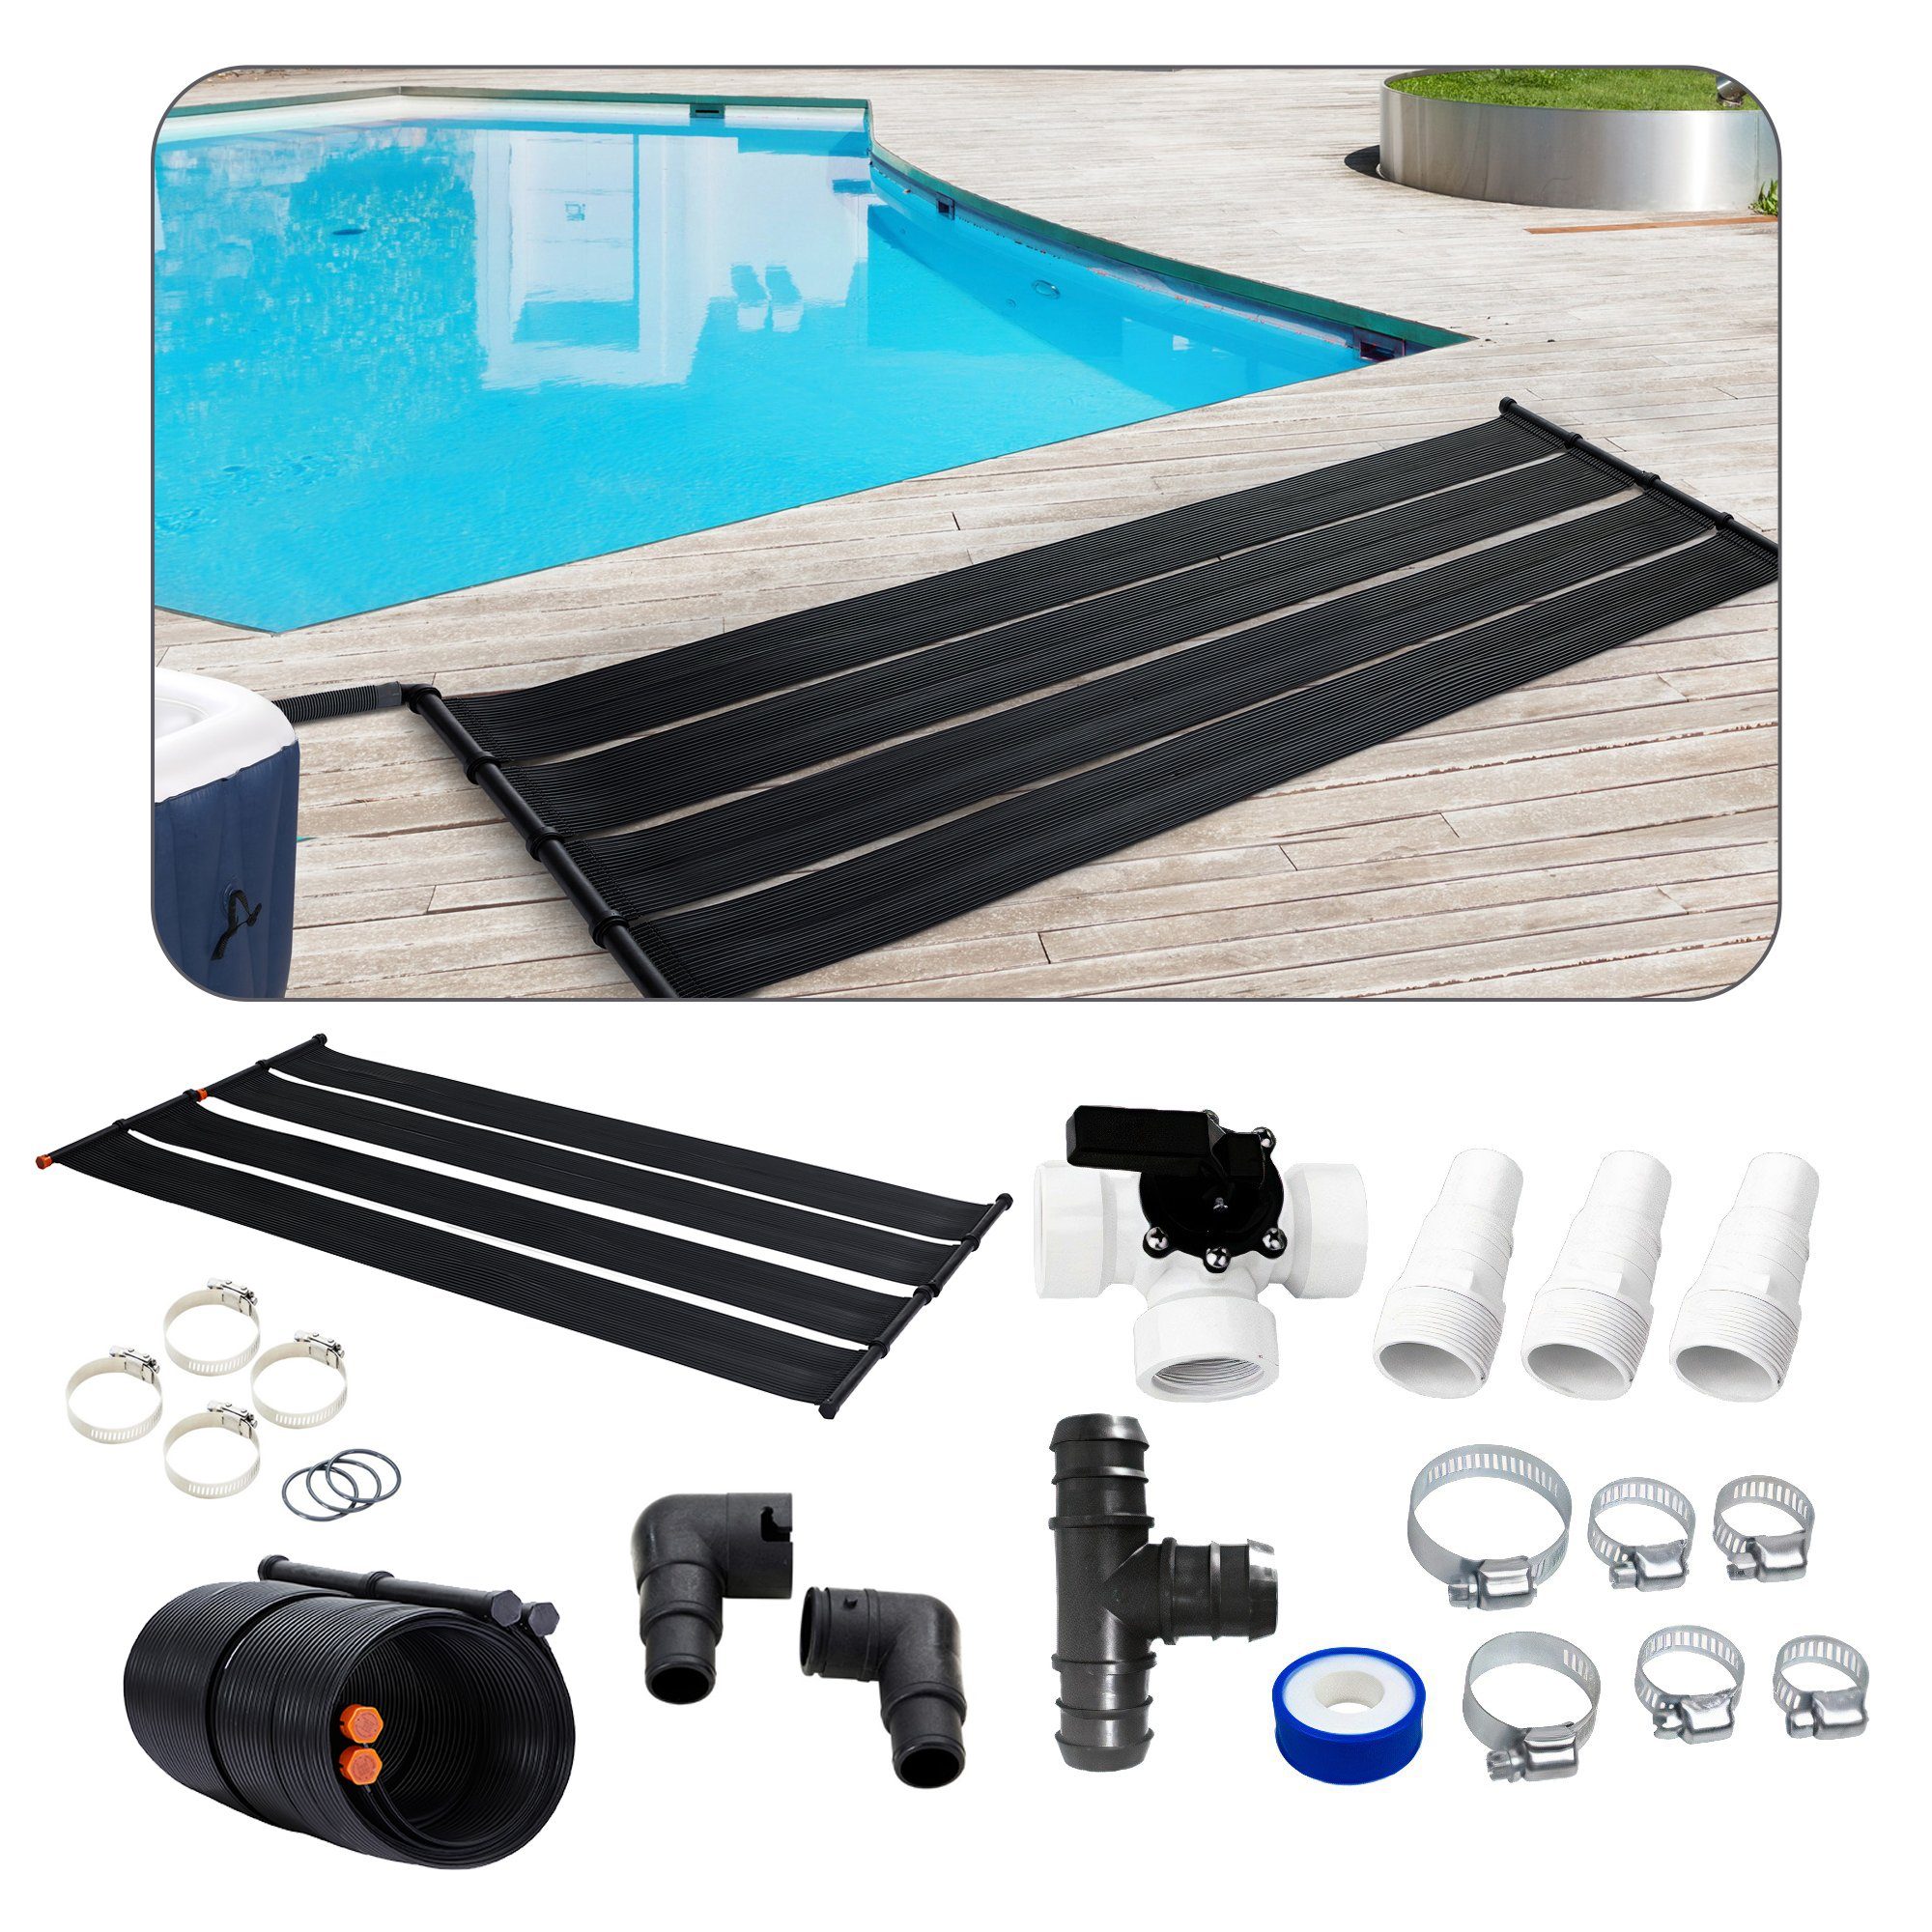 2 x Poolheizung für Pool Solarheizung Schwimmbadheizung Solarkollektor Intex 